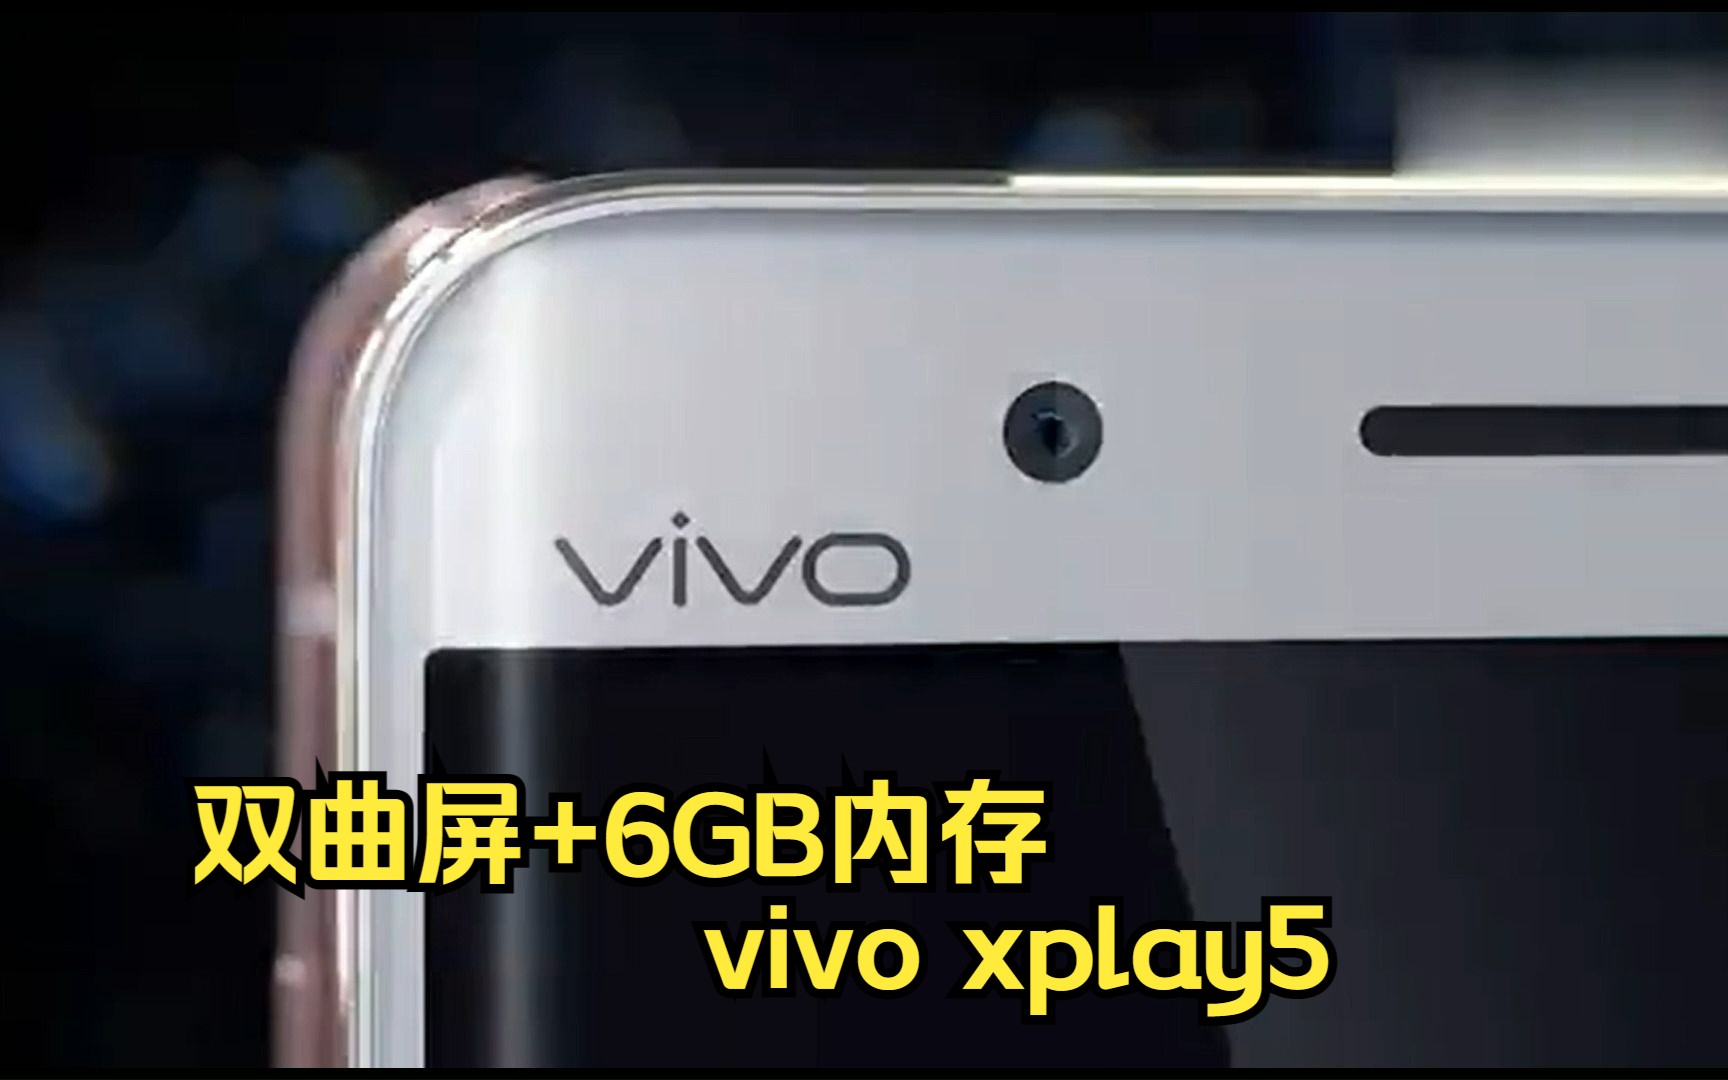 国内首款双曲屏和6GB大内存——vivo xplay5